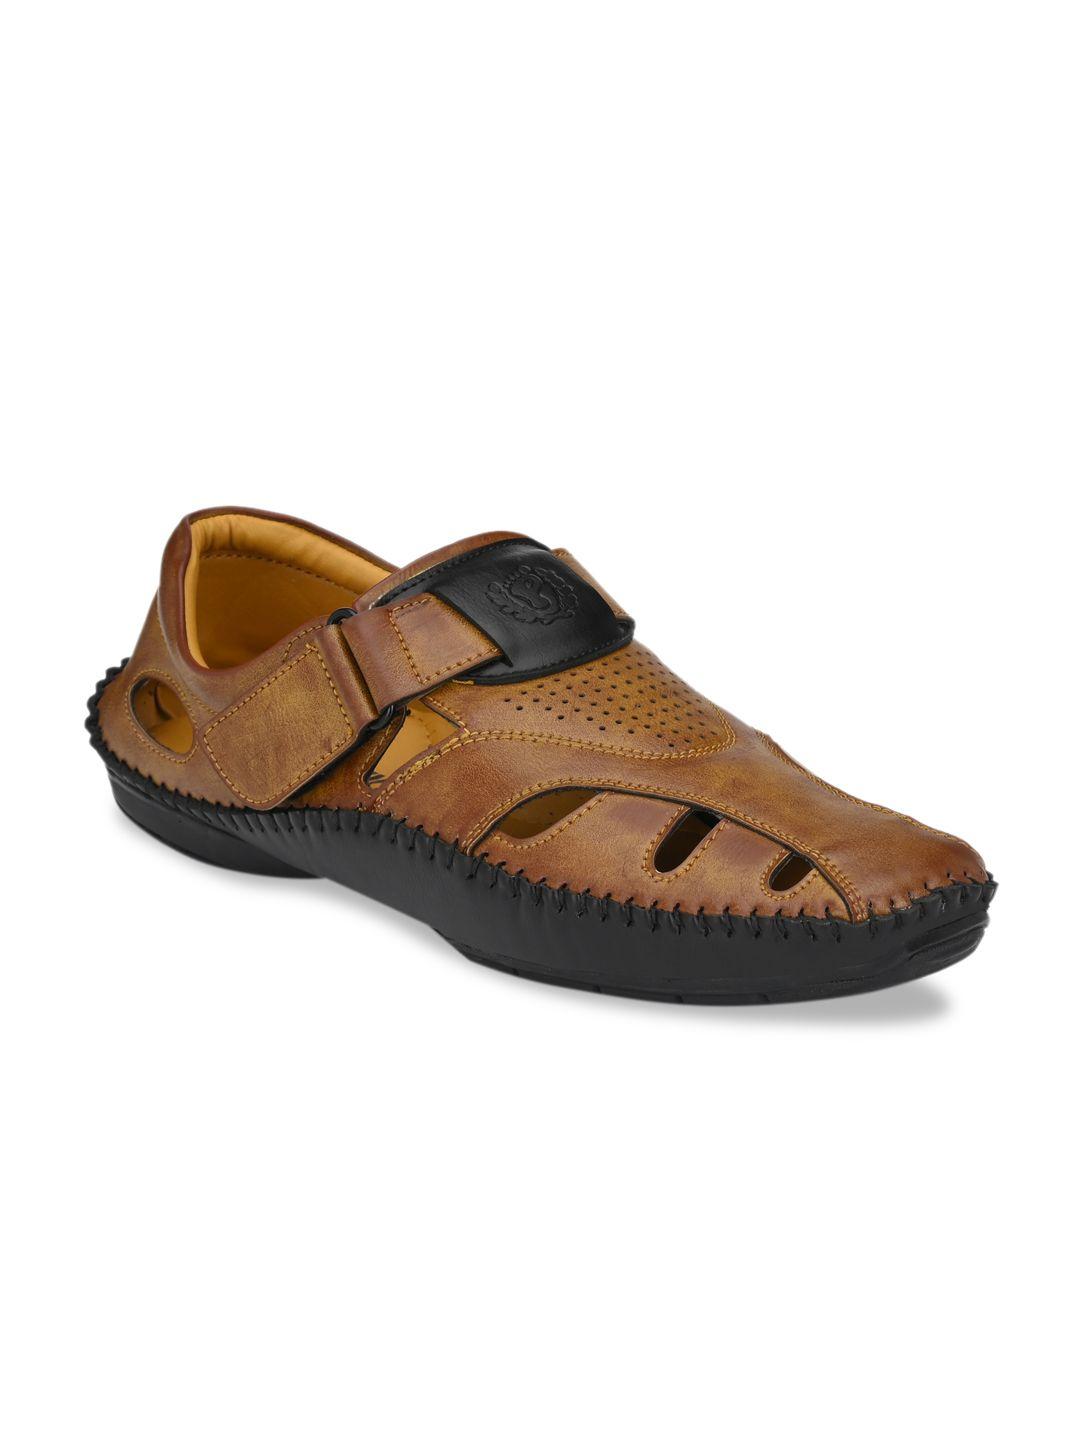 prolific men tan brown shoe-style sandals